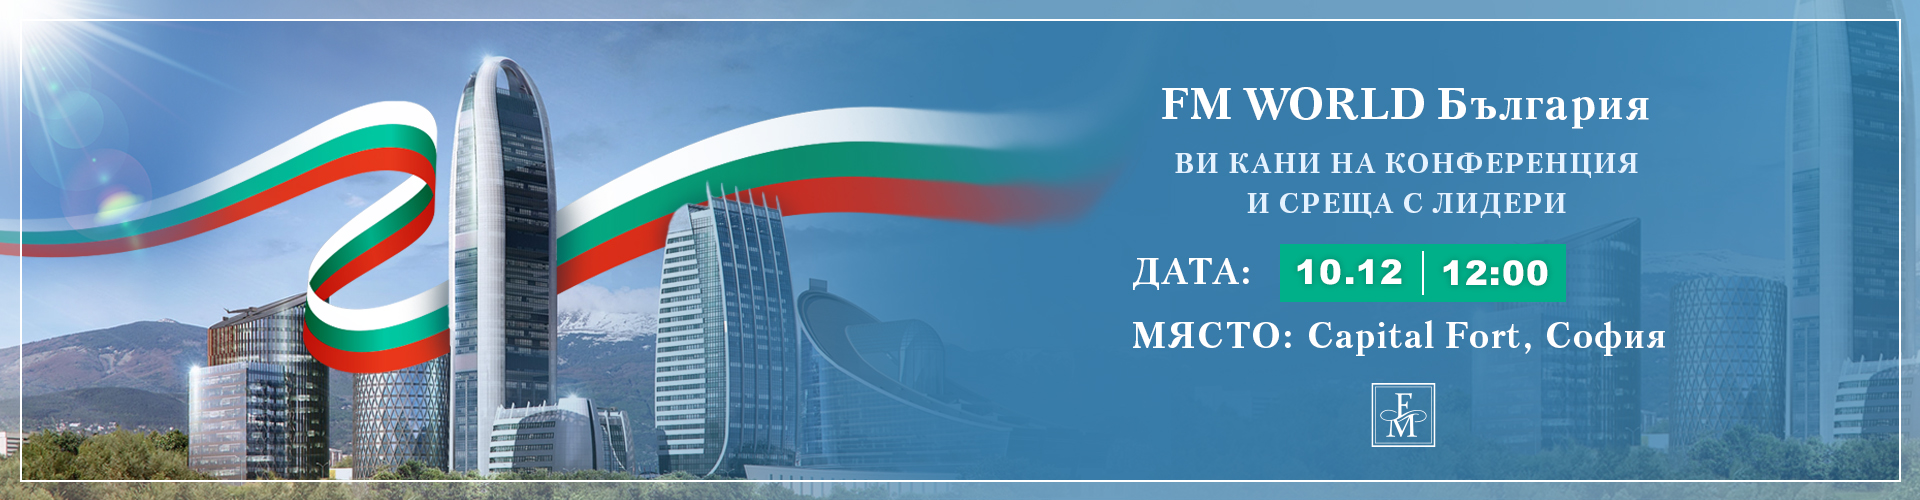 FM World България събитие на 10.12.2022г